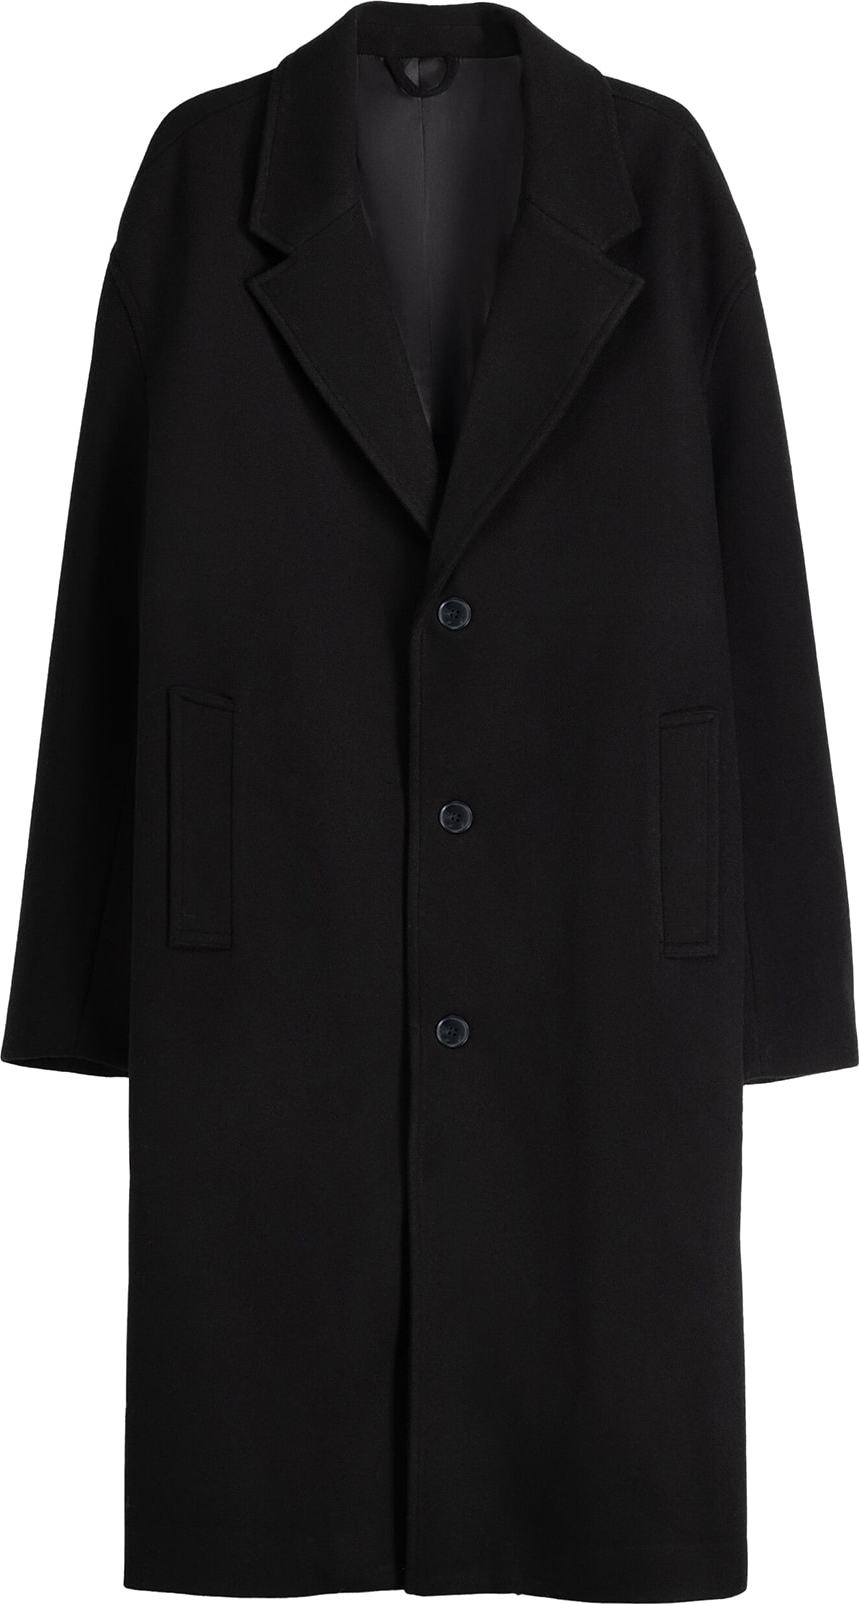 Přechodný kabát Bershka černá